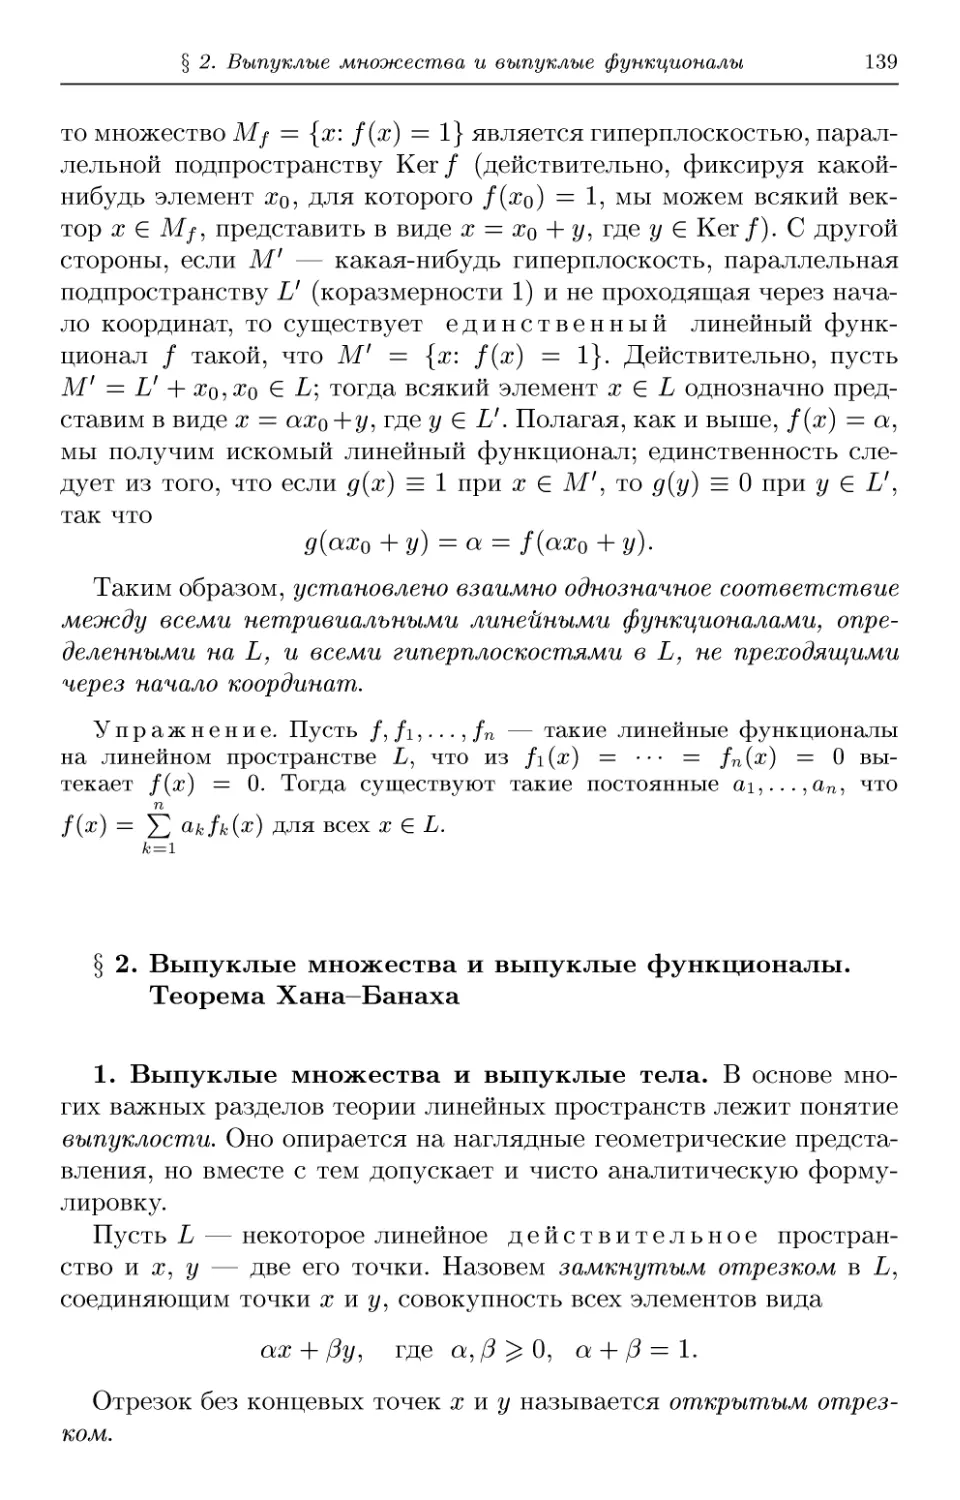 § 2. Выпуклые множества и выпуклые функционалы. Теорема Хана-Банаха